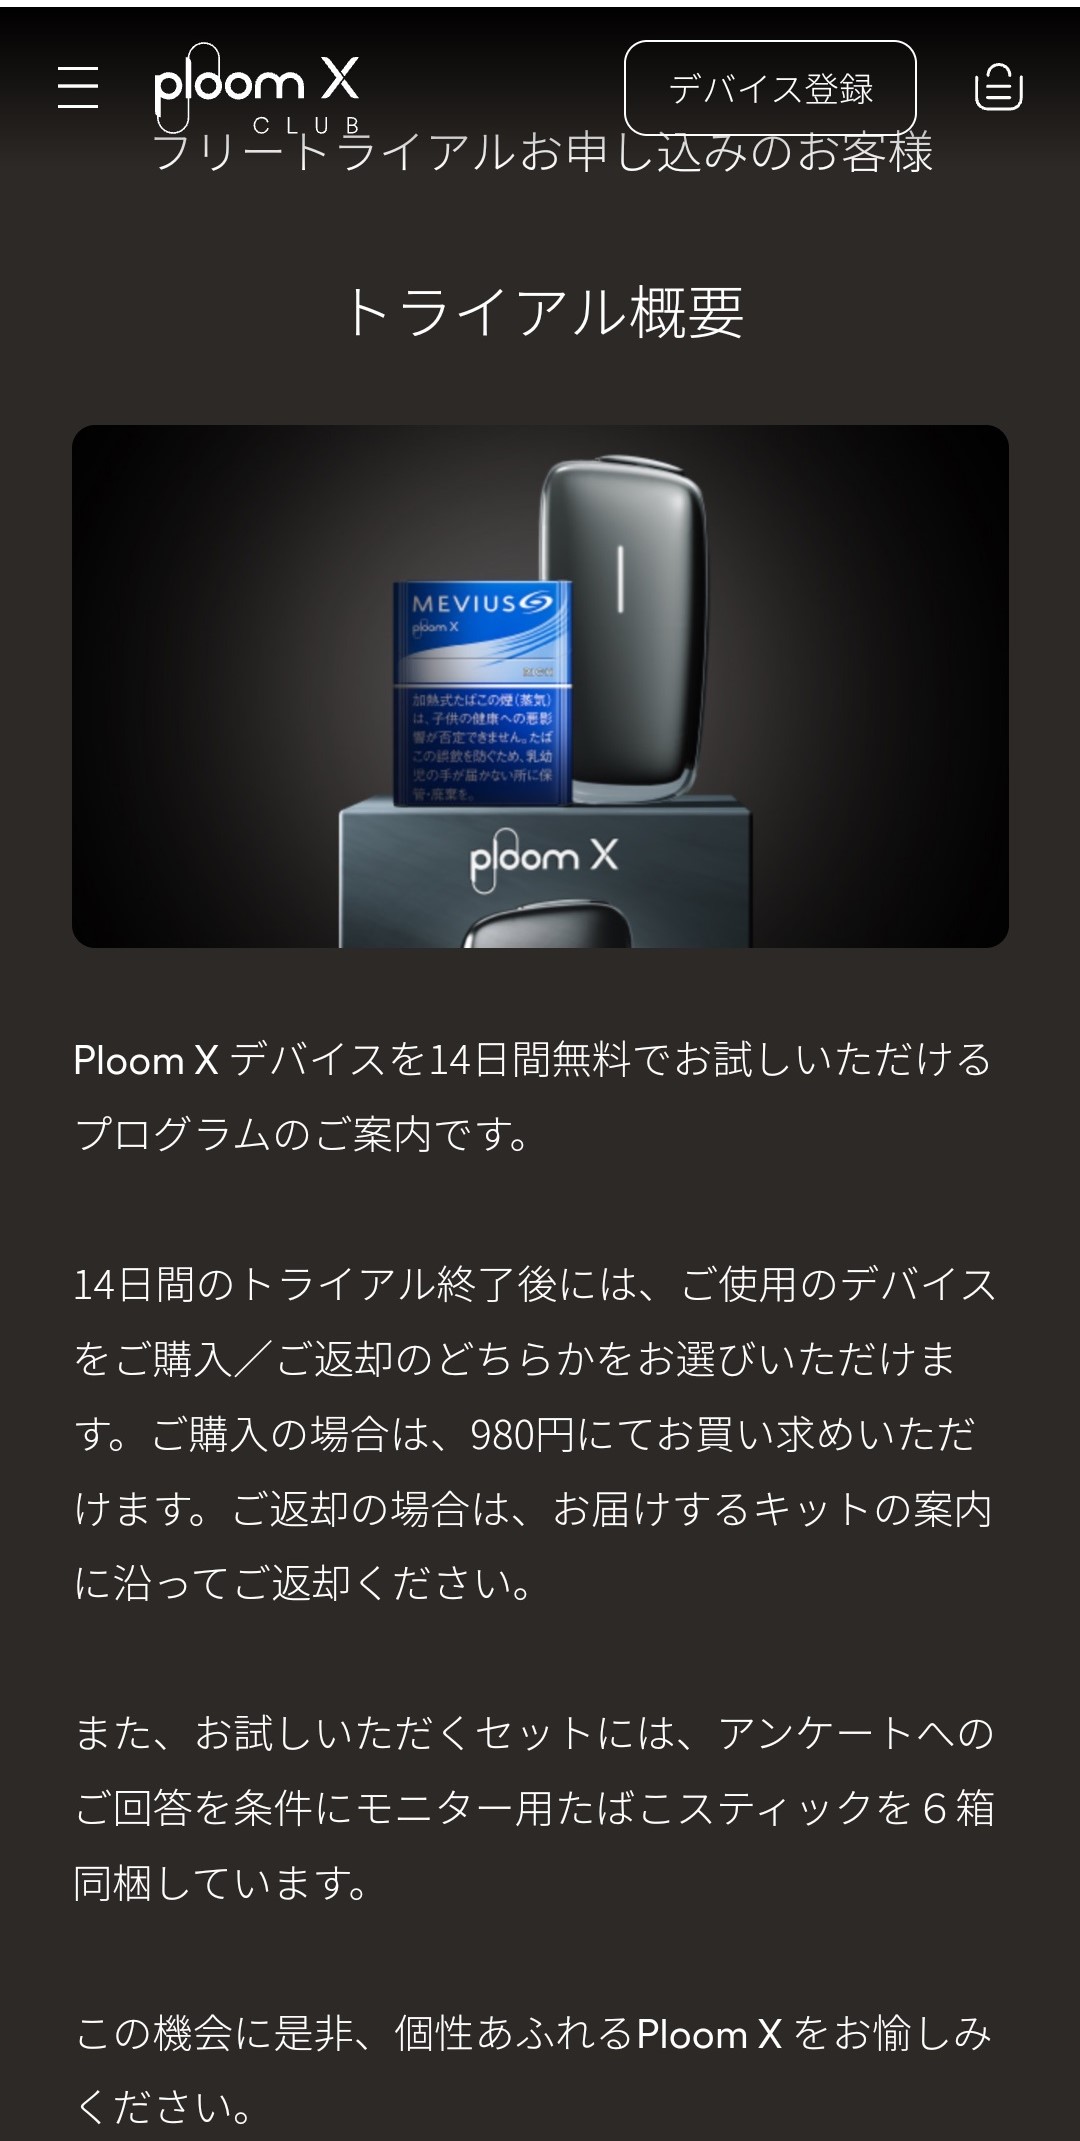 PloomXトライアルの概要